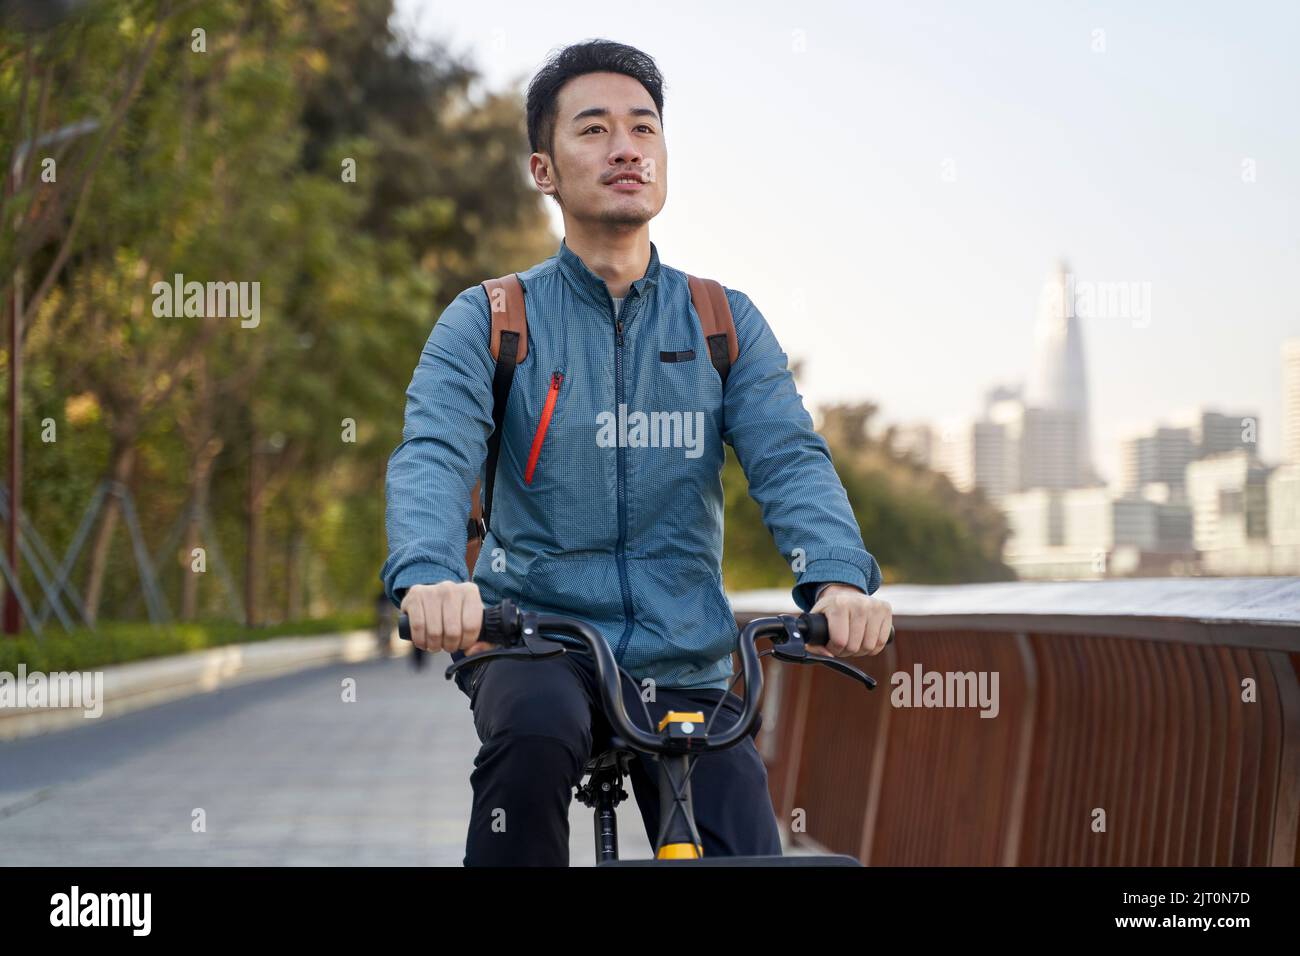 hombre joven asiático adulto montando en bicicleta por el parque junto al río con el horizonte de la ciudad en el fondo Foto de stock